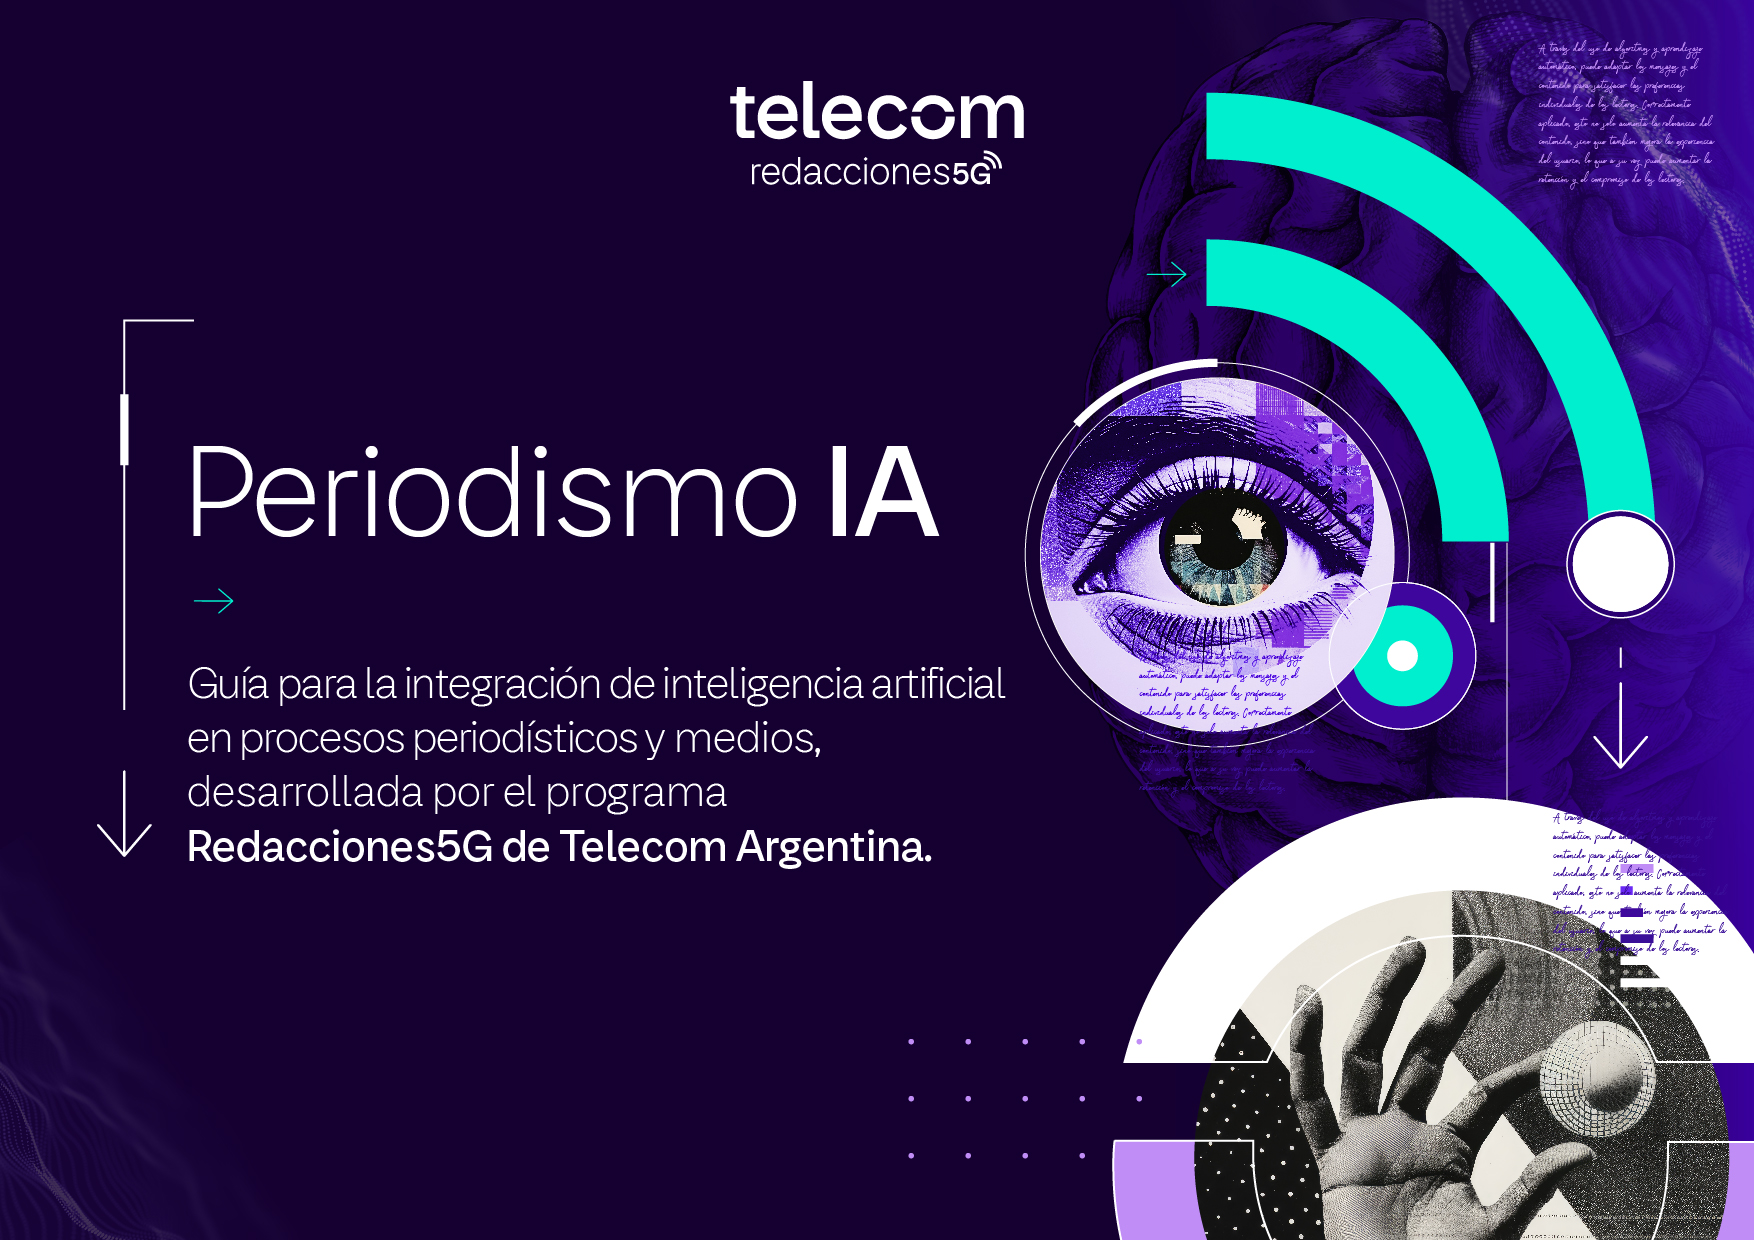 Redacciones 5G de Telecom Argentina Lanza «Periodismo IA», una Guía para la Integración de la Inteligencia Artificial en el Periodismo y los Medios